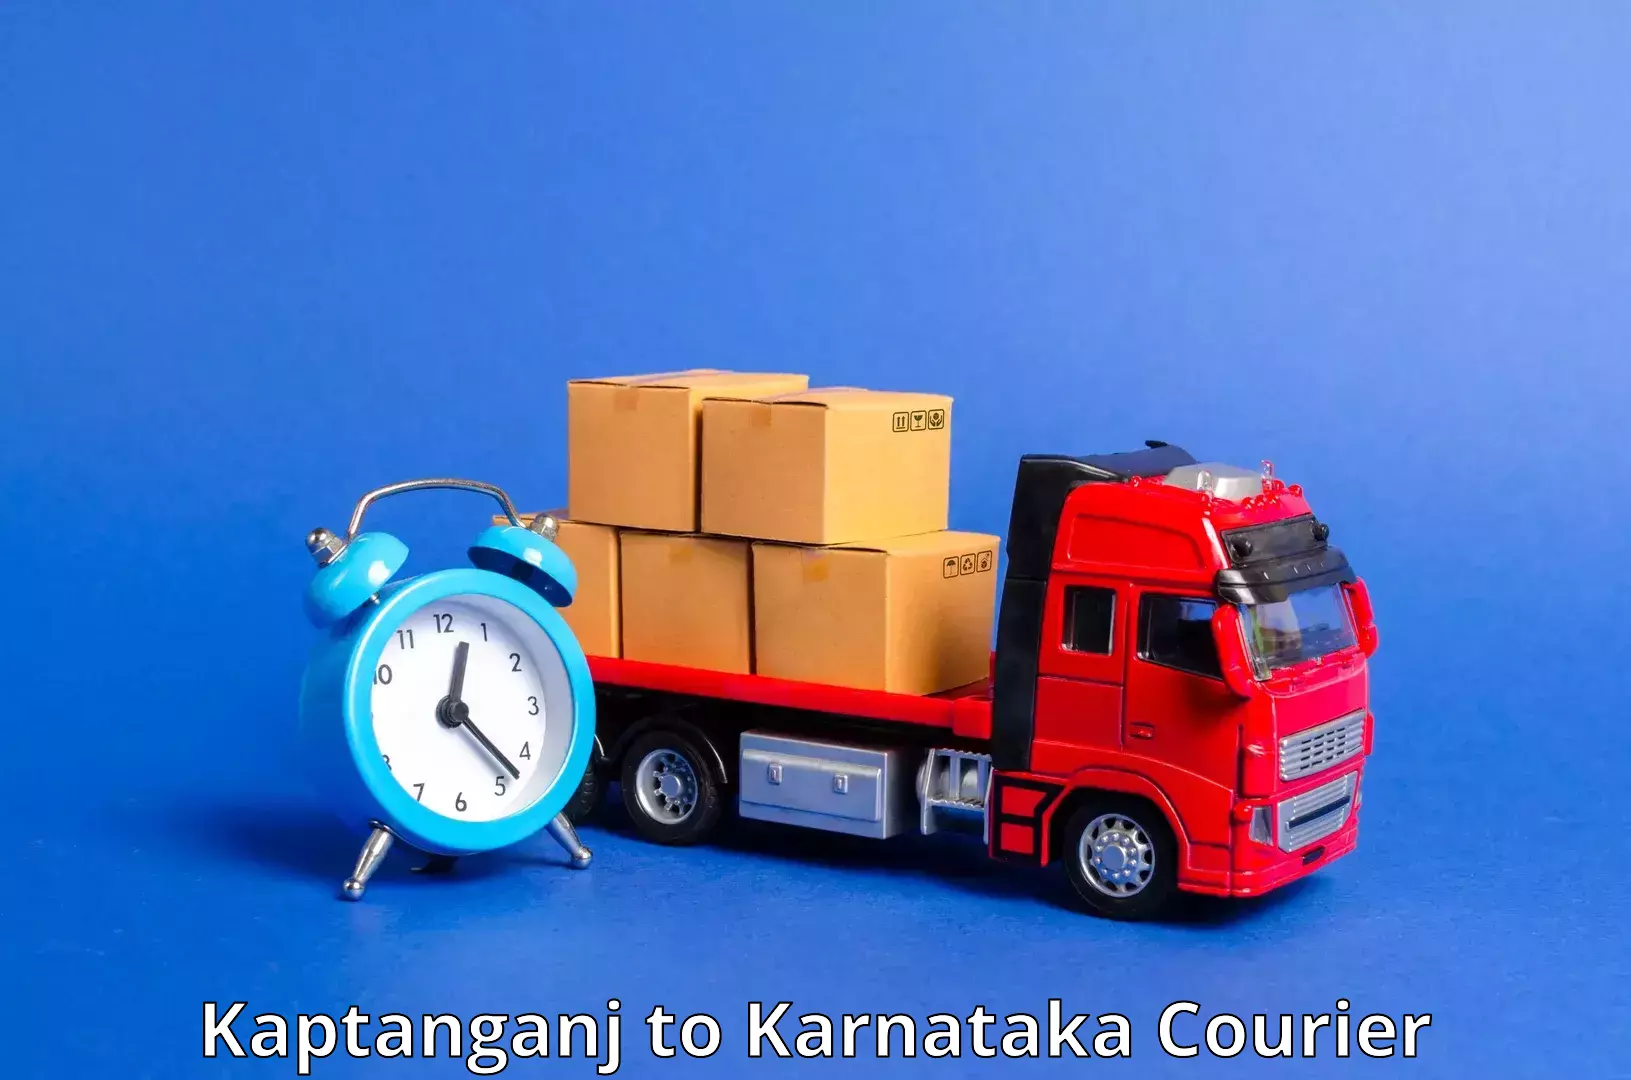 24/7 courier service Kaptanganj to Jayanagar